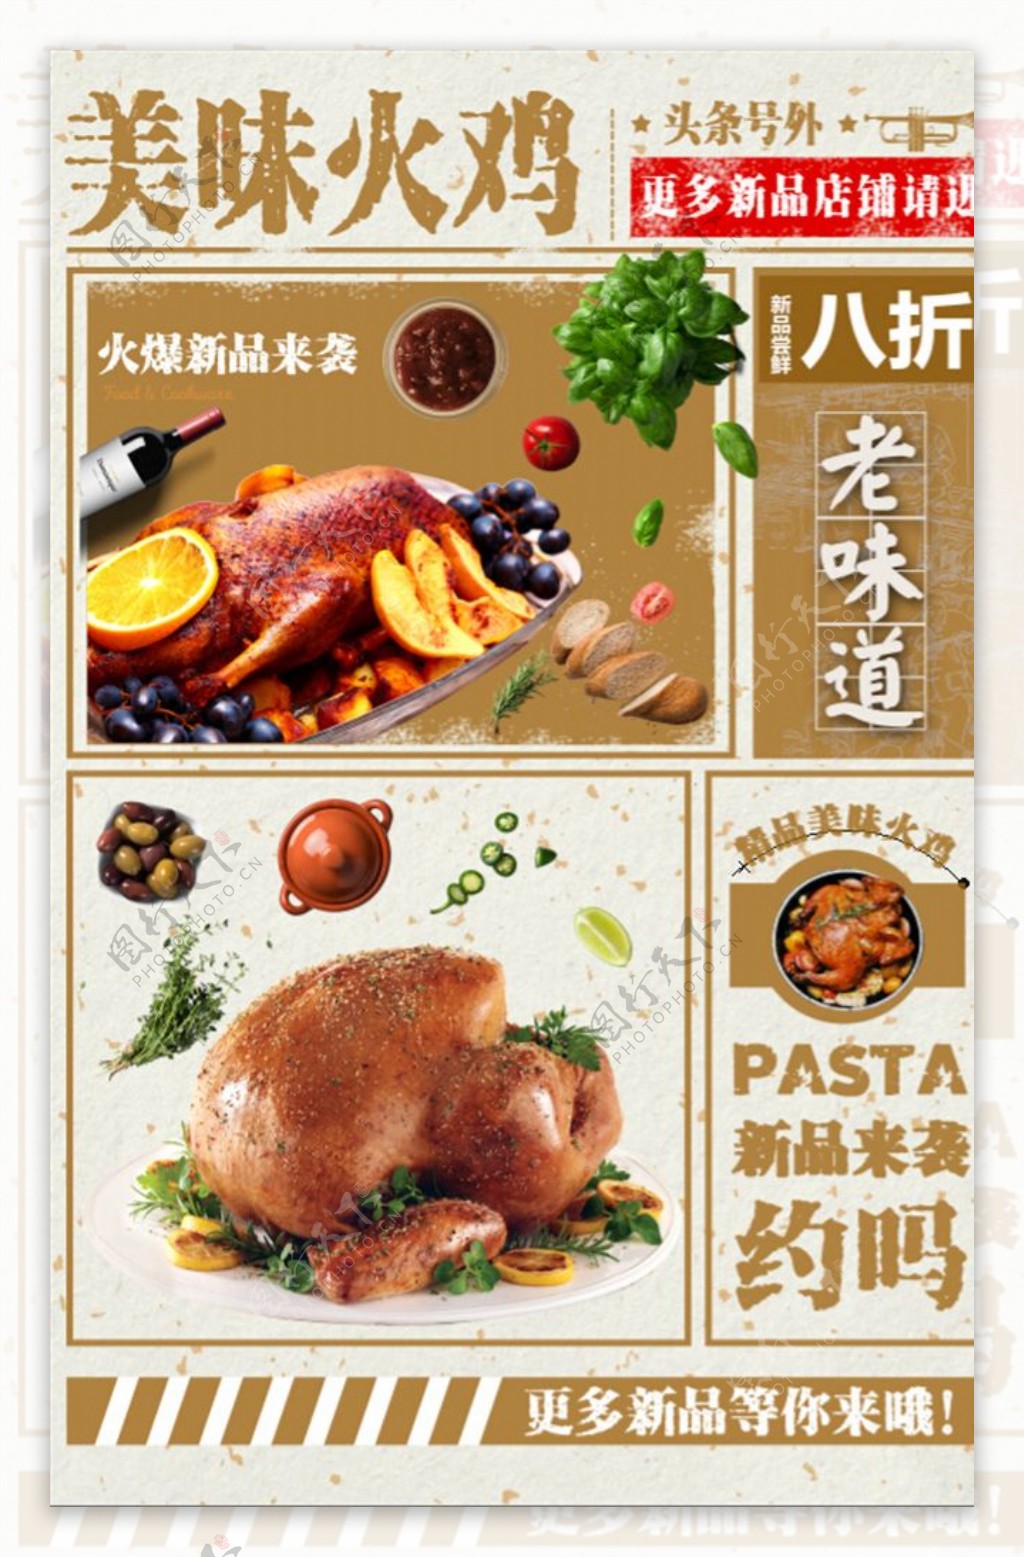 美味火鸡美食宣传海报设计